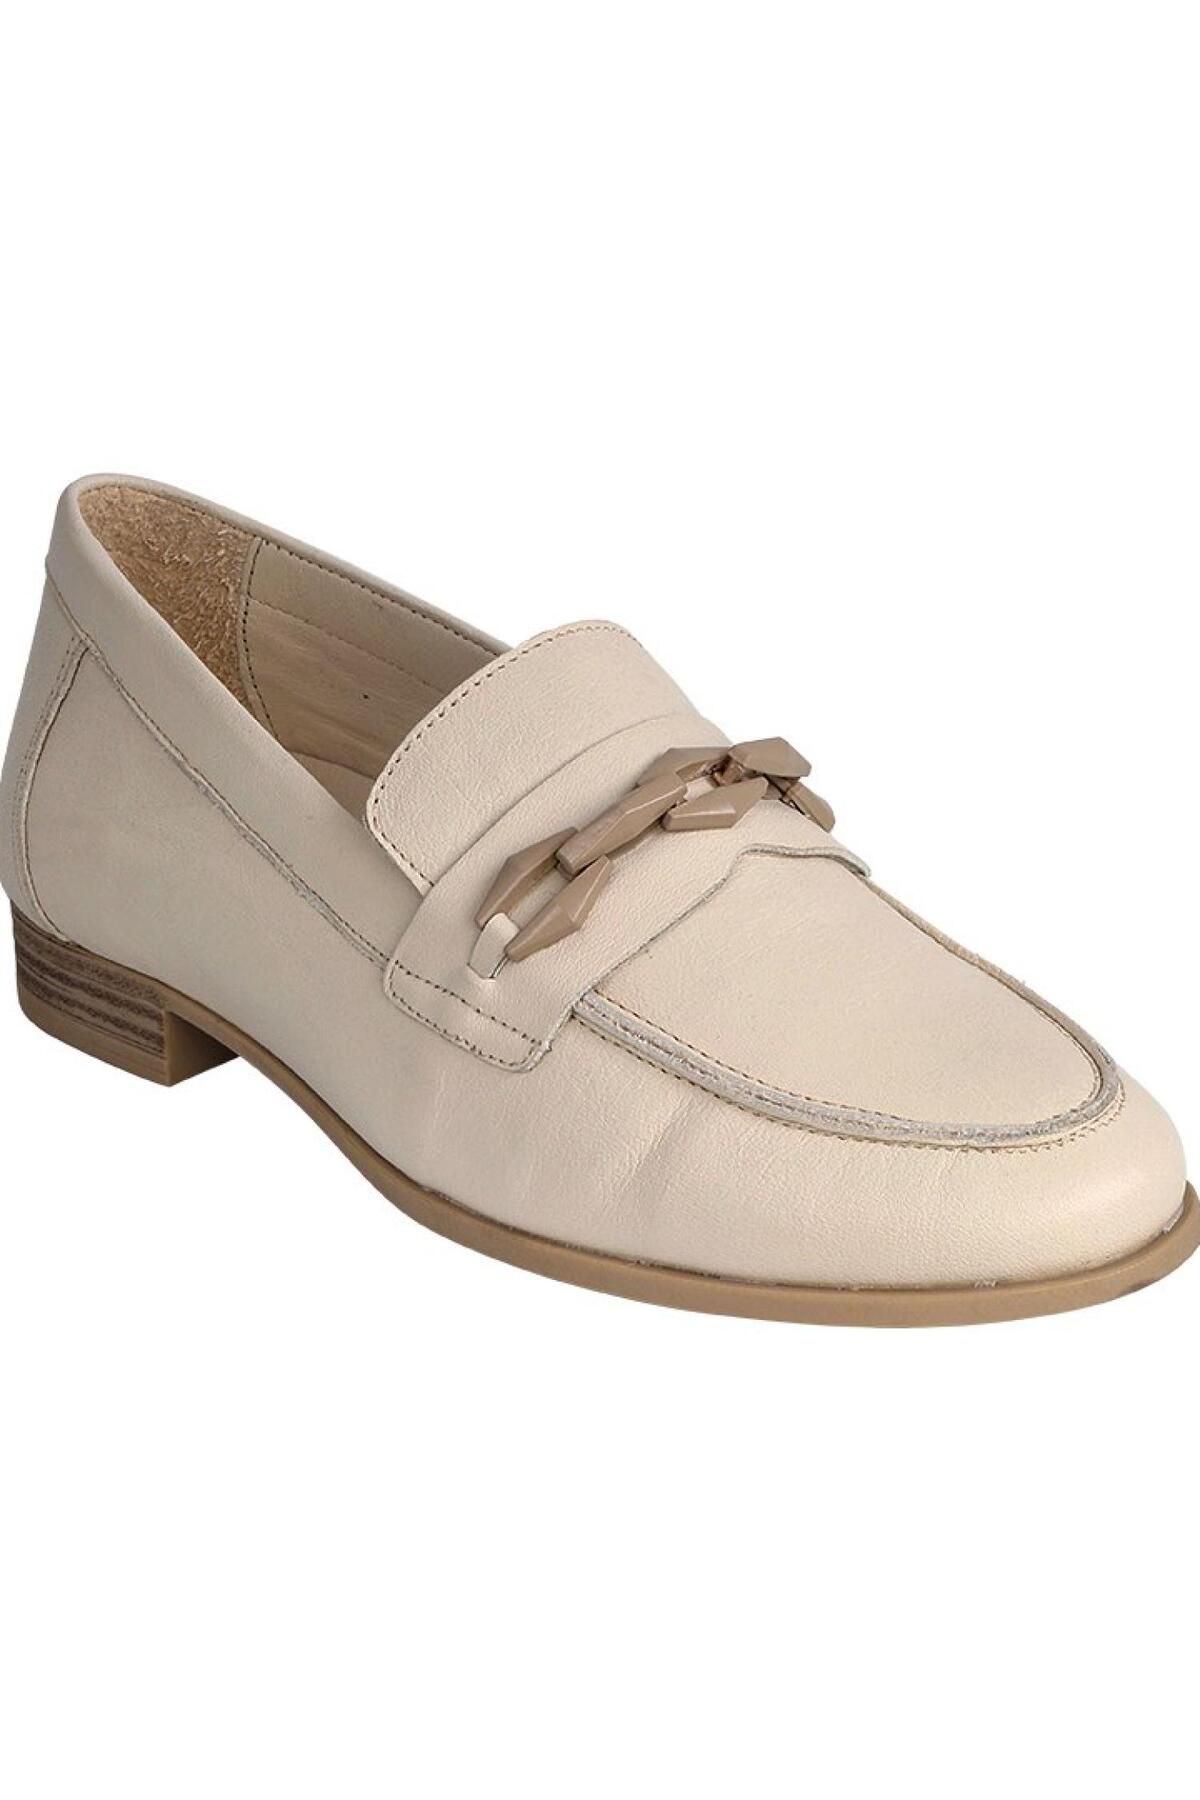 Mammamia D24Ya-3215 Kadın Deri Loafer Ayakkabı